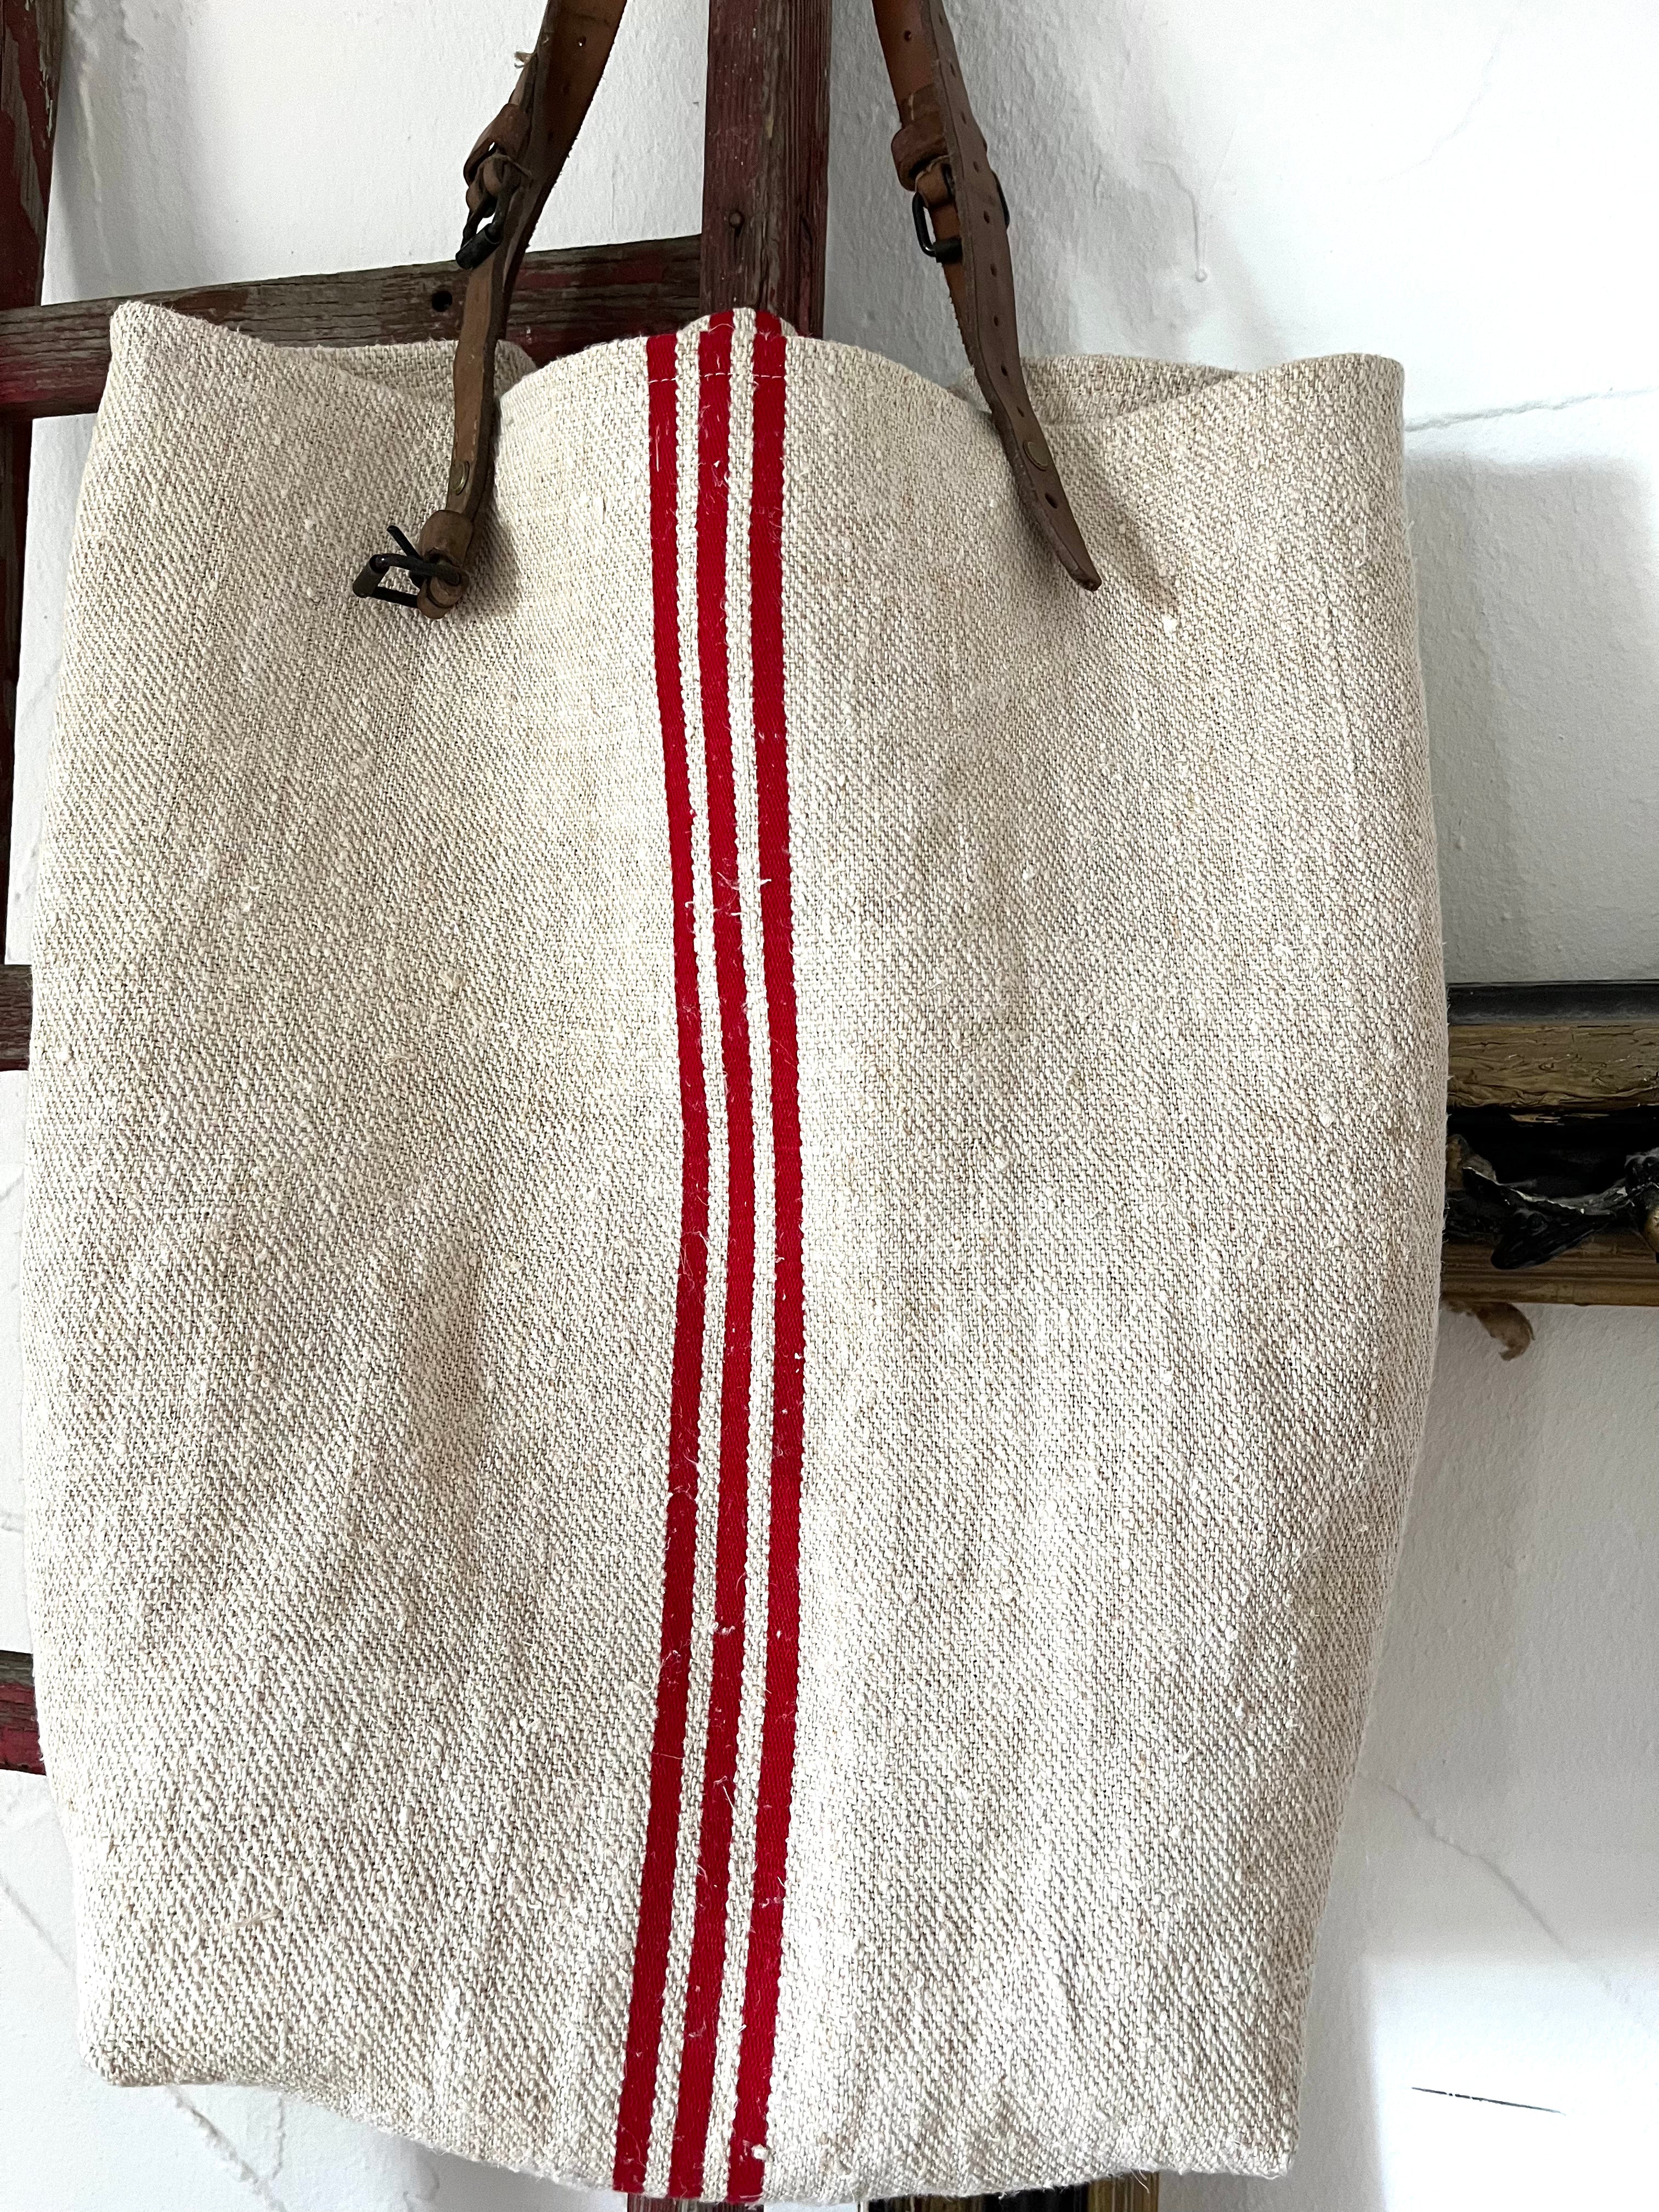 Big Red striped Bag: Shopper aus sehr altem Leinensack mit Streifen